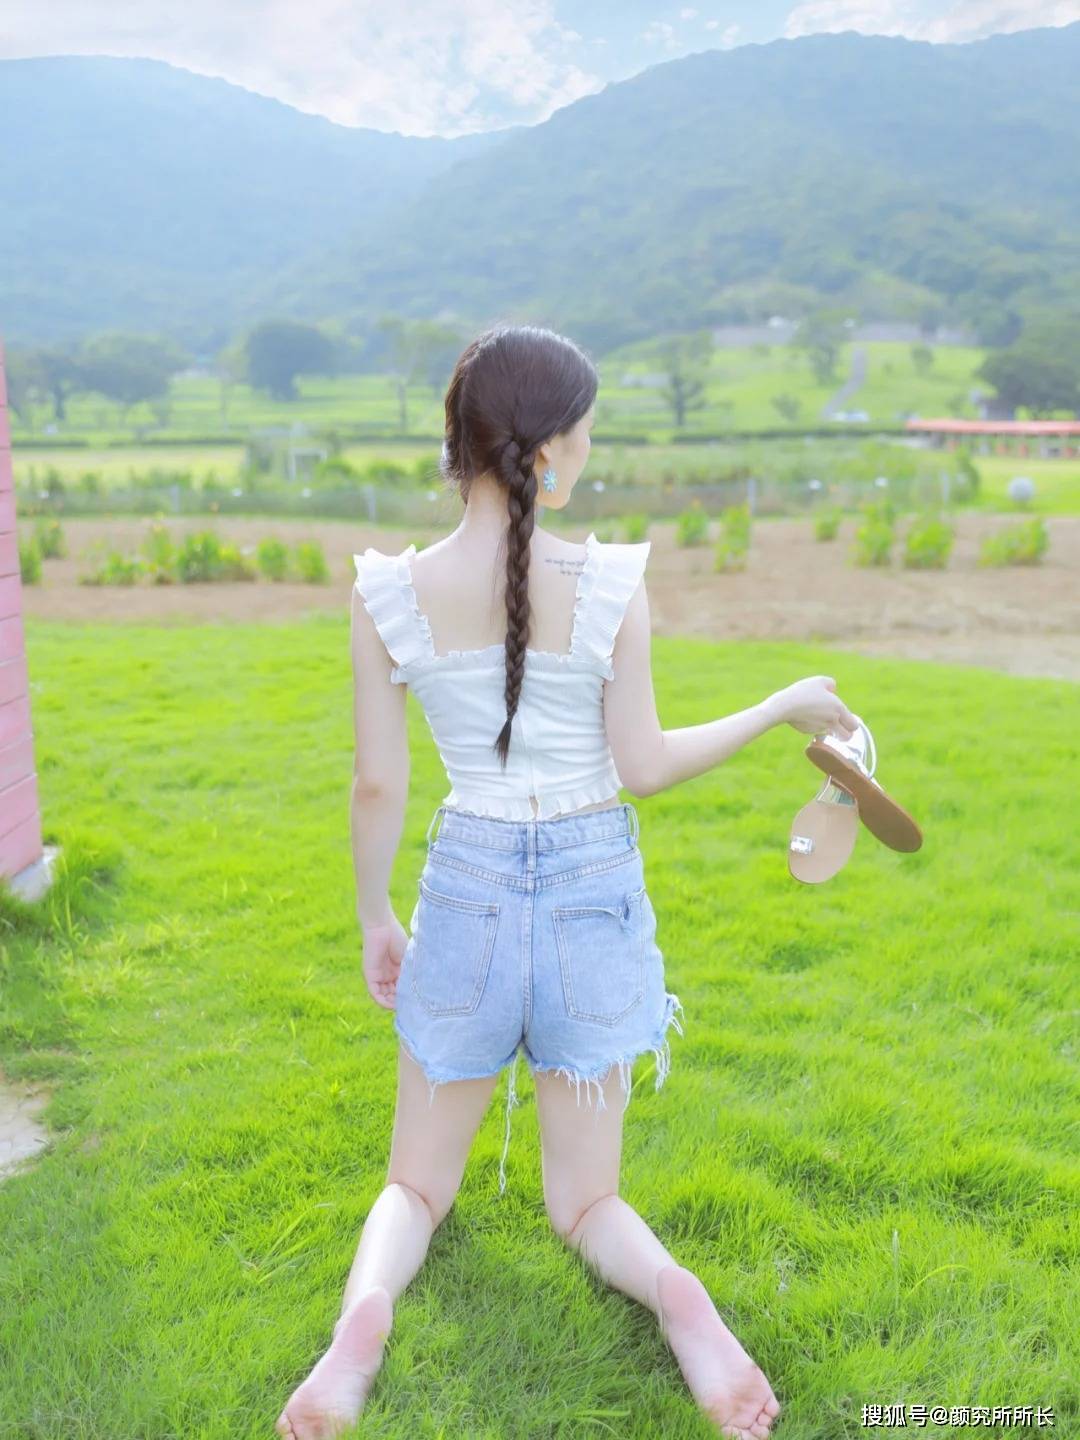 19岁扎双马尾的女孩夏季照片奖:白色蕾丝吊带上衣搭配短款牛仔裤清新自然。